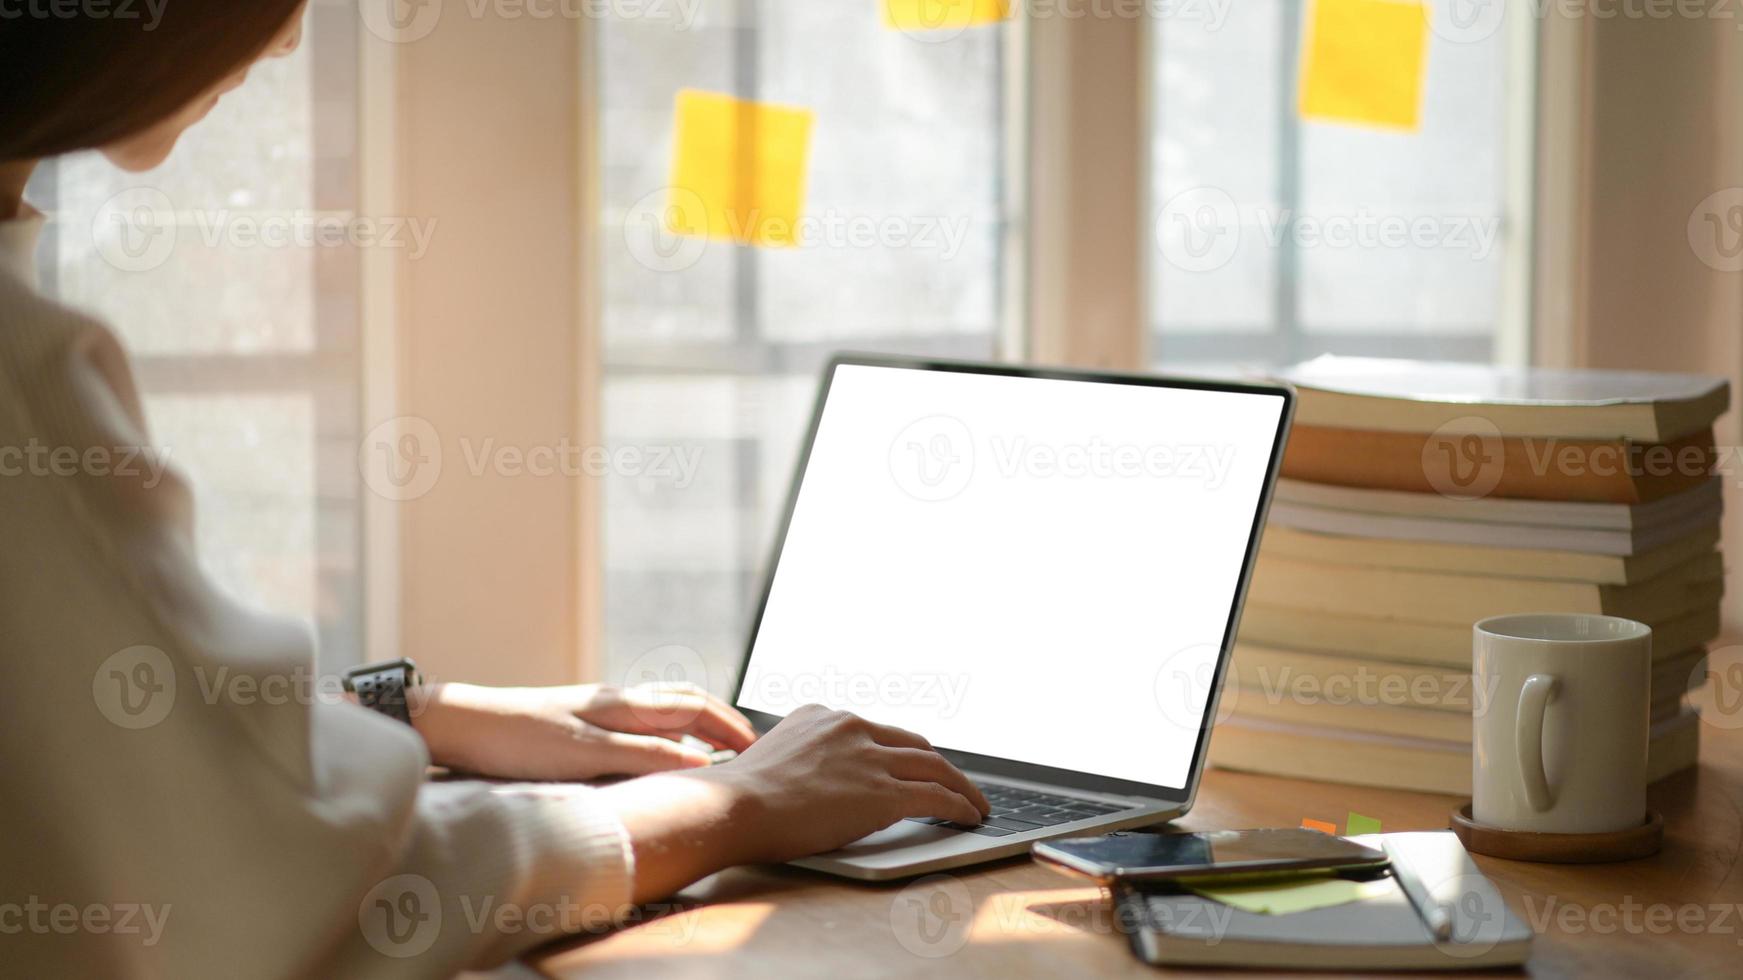 mulheres de negócios jovens estão usando laptop de tela em branco com equipamento de escritório em um escritório moderno. foto